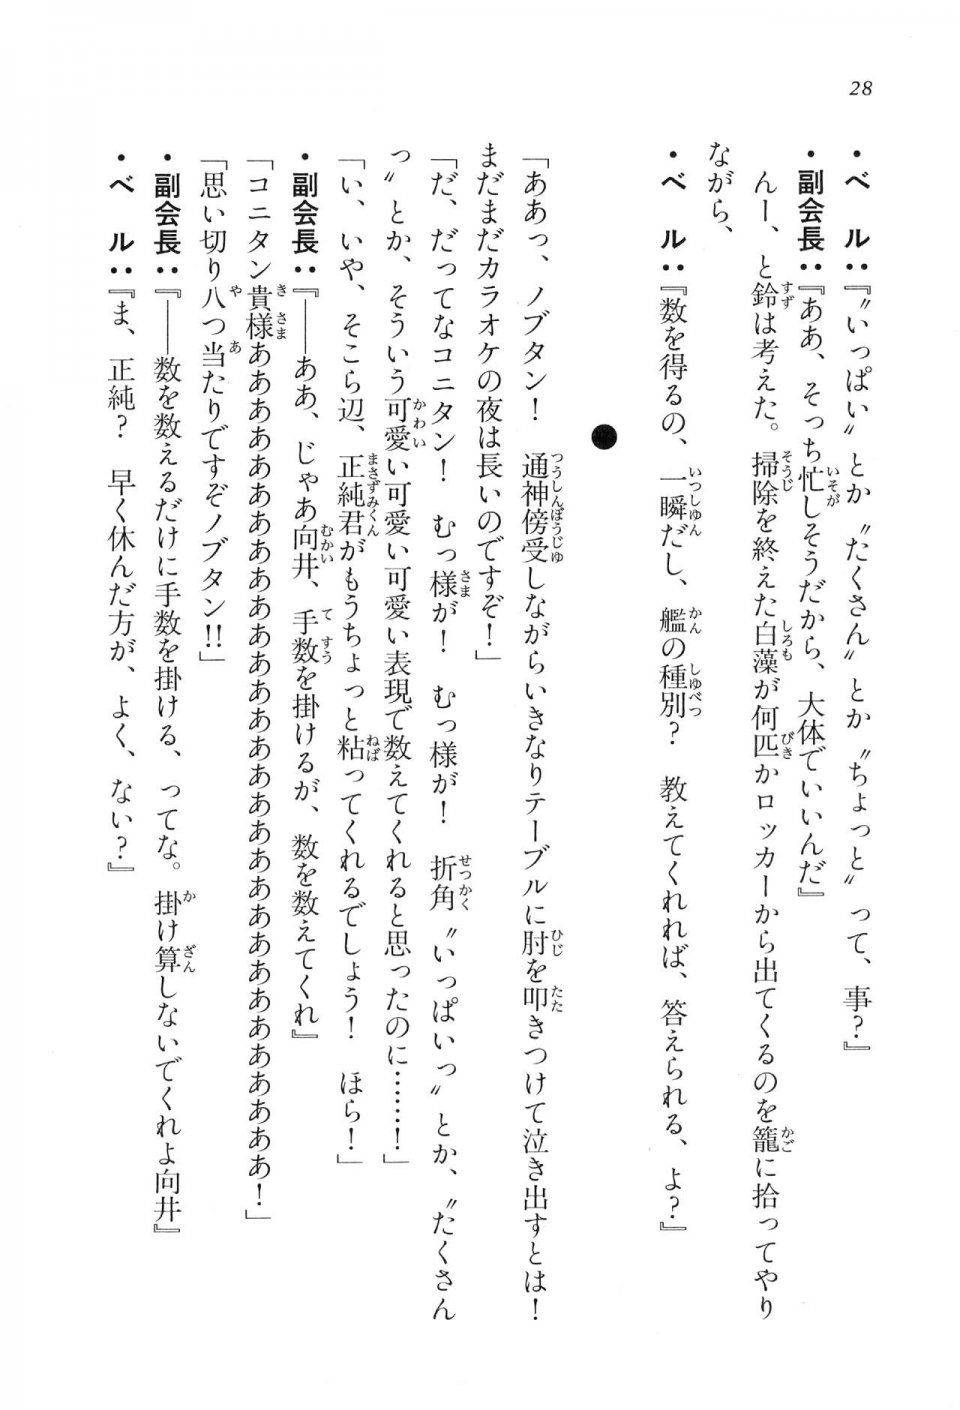 Kyoukai Senjou no Horizon LN Vol 16(7A) - Photo #28